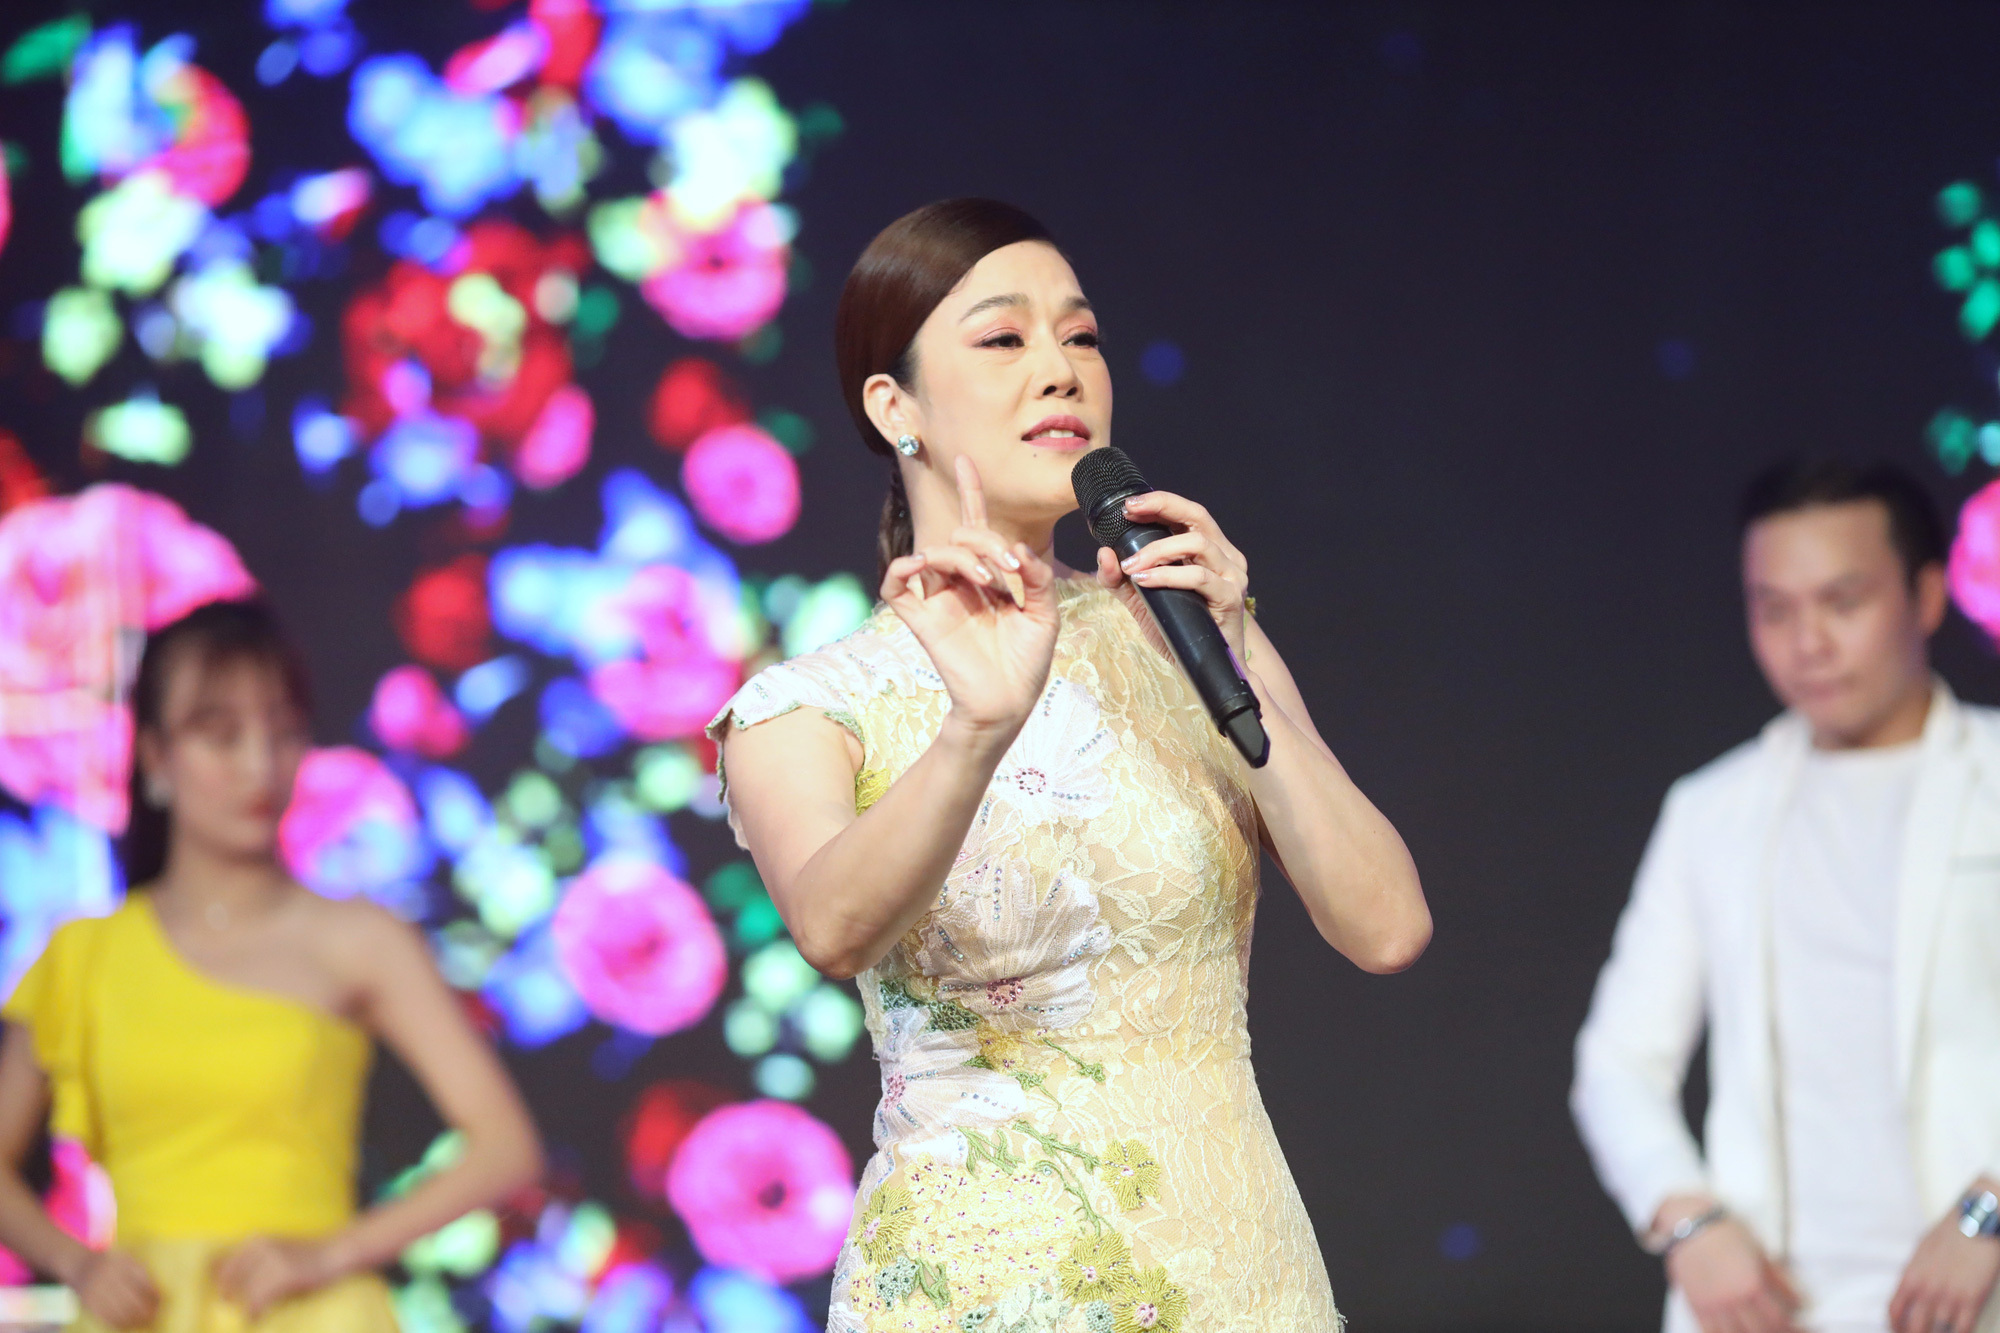 Ca sĩ Thu Phương là một trong 4 ca sĩ tham gia show diễn gây quỹ lần này